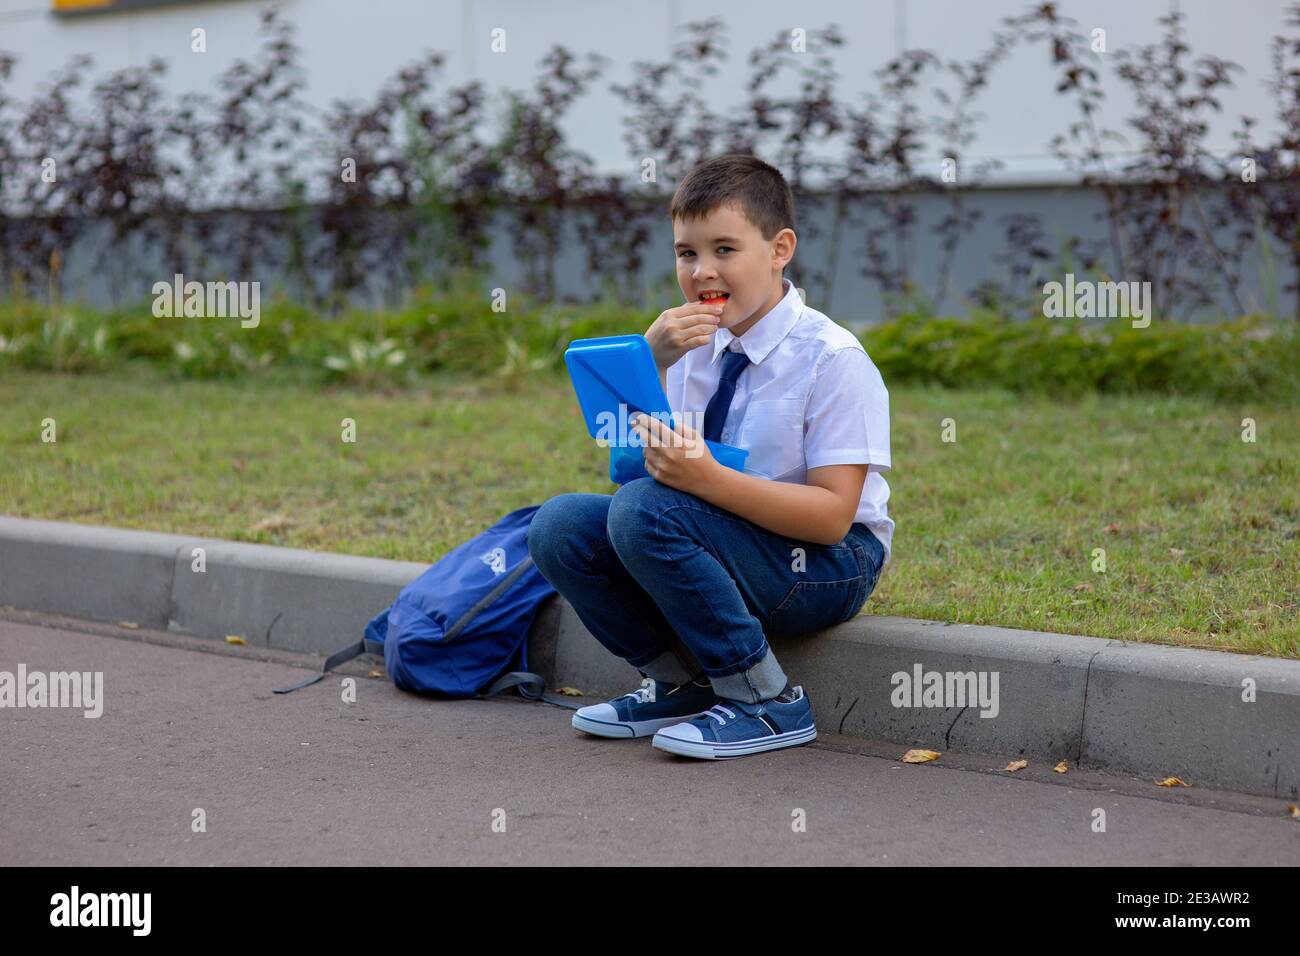 un écolier dans une chemise blanche avec une cravate bleue tient une boîte à lunch bleue et mange un morceau de pomme Banque D'Images